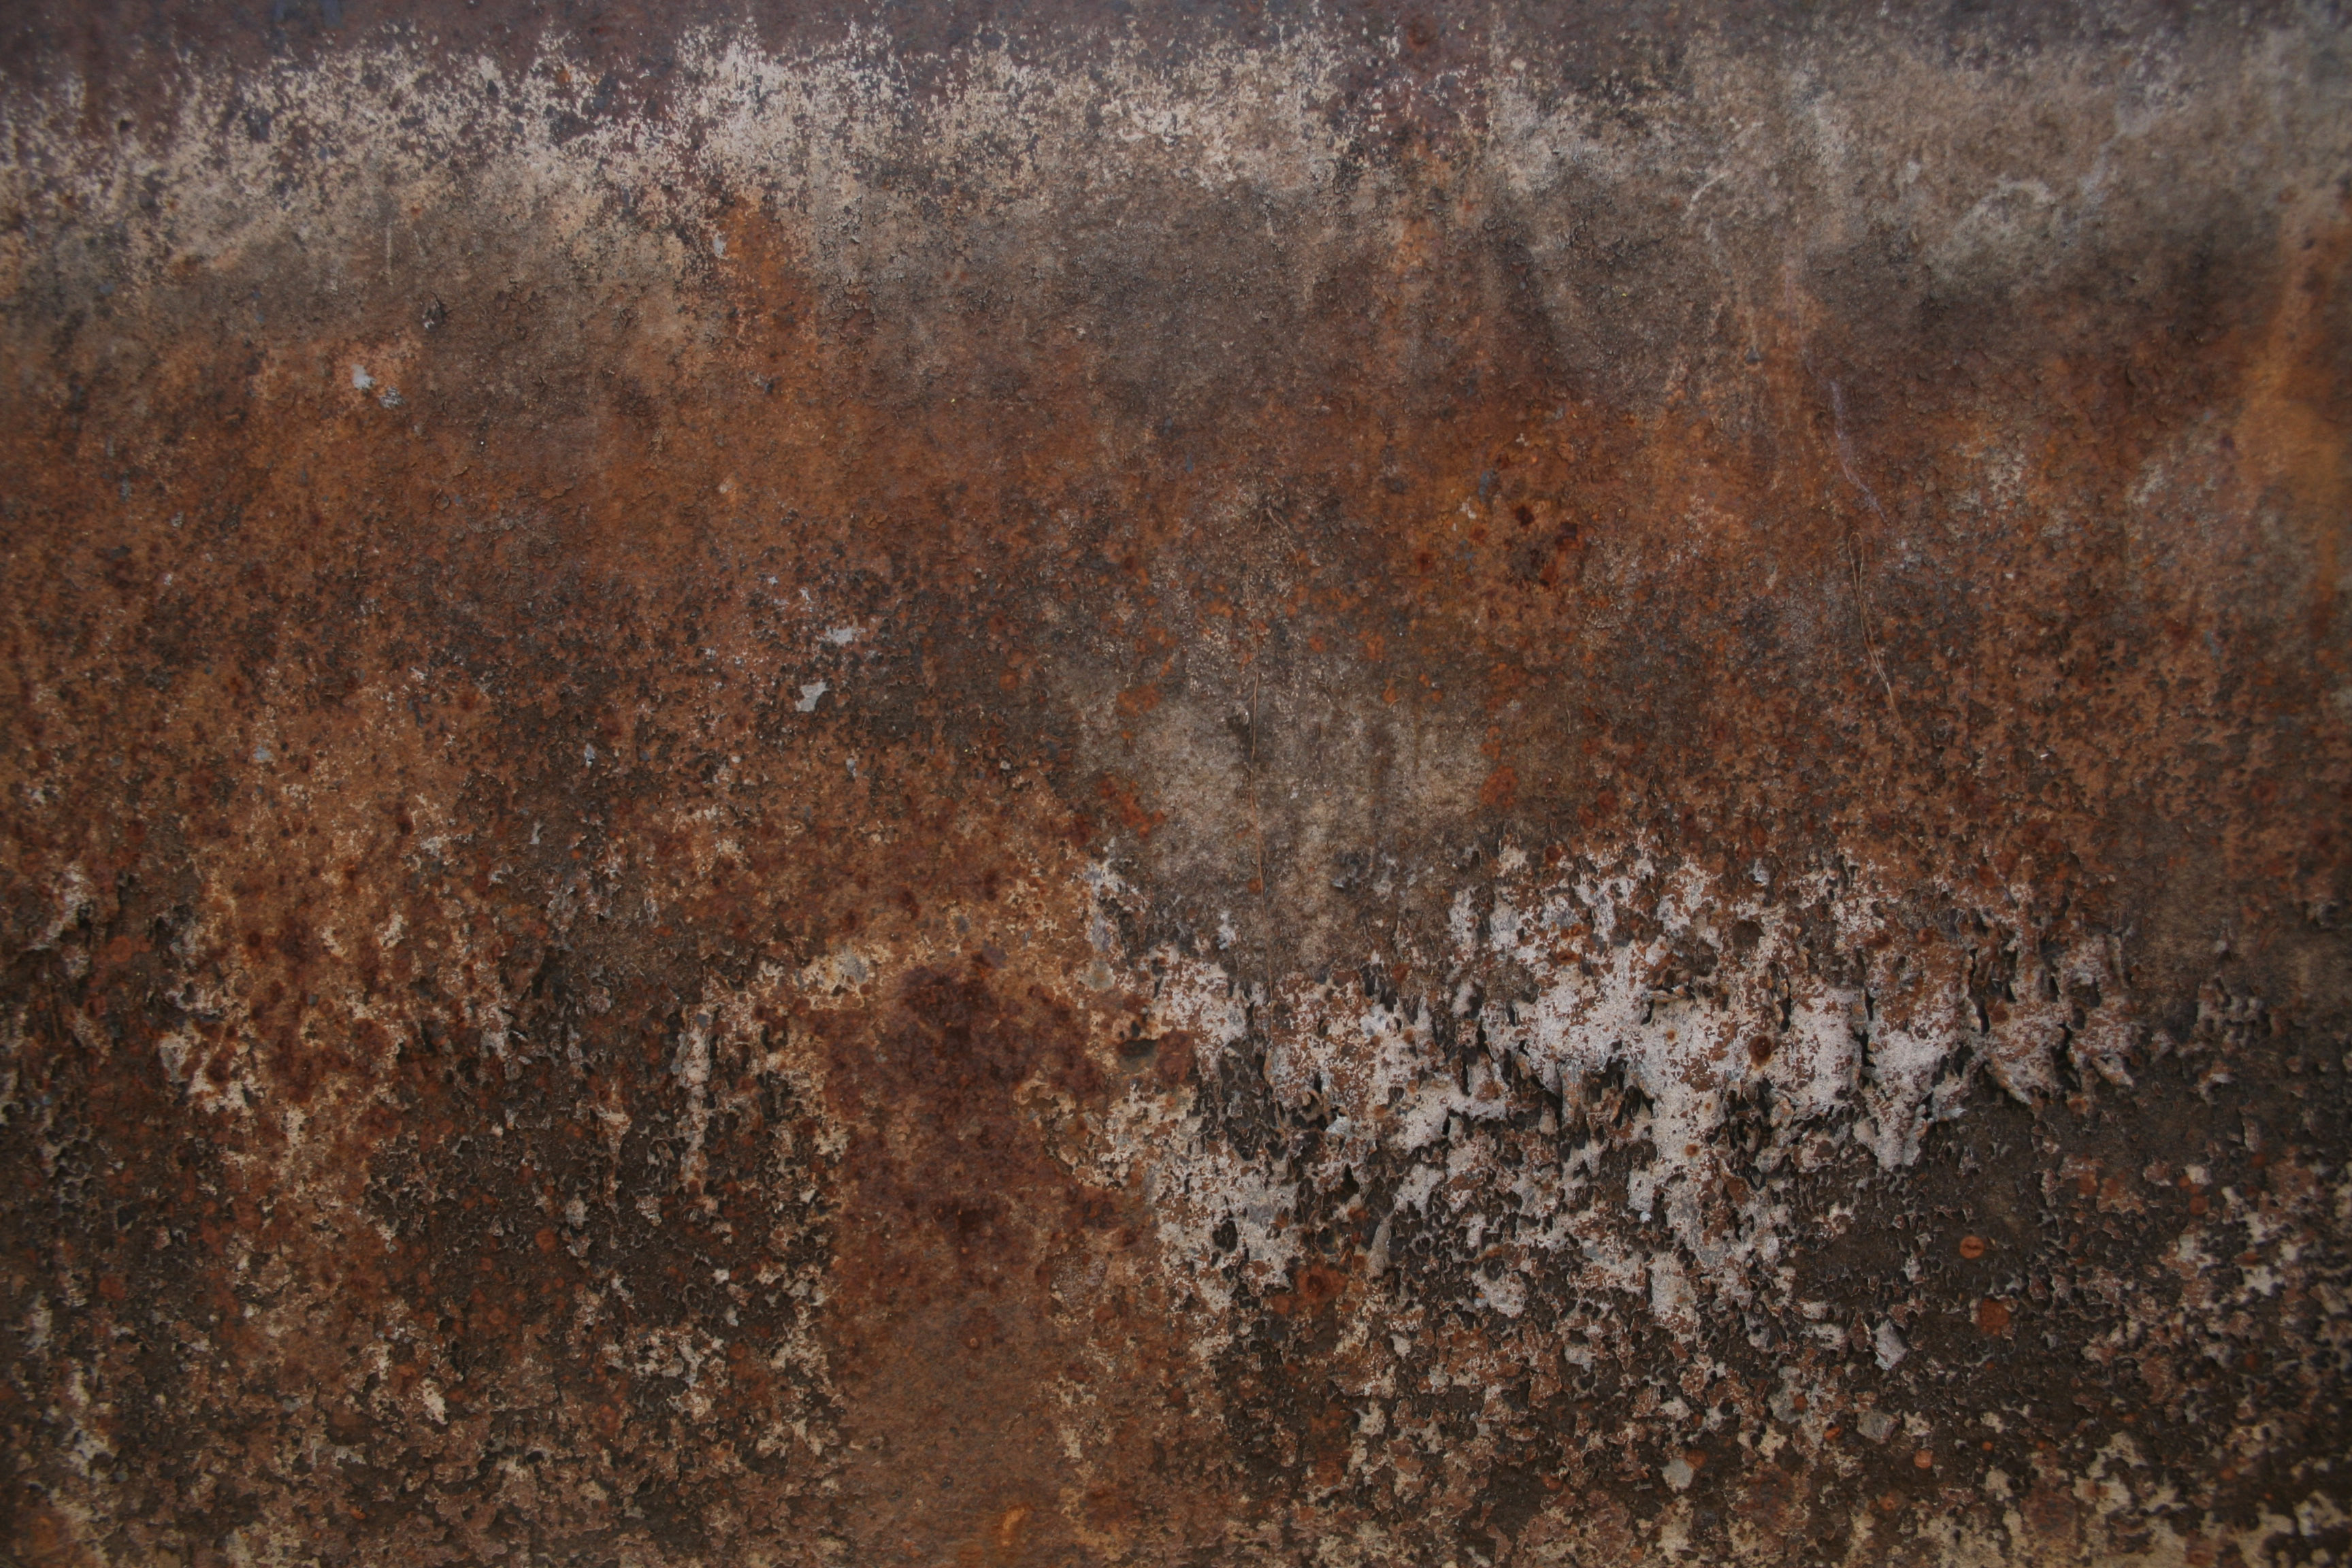 Rusty Metal Wall Texture